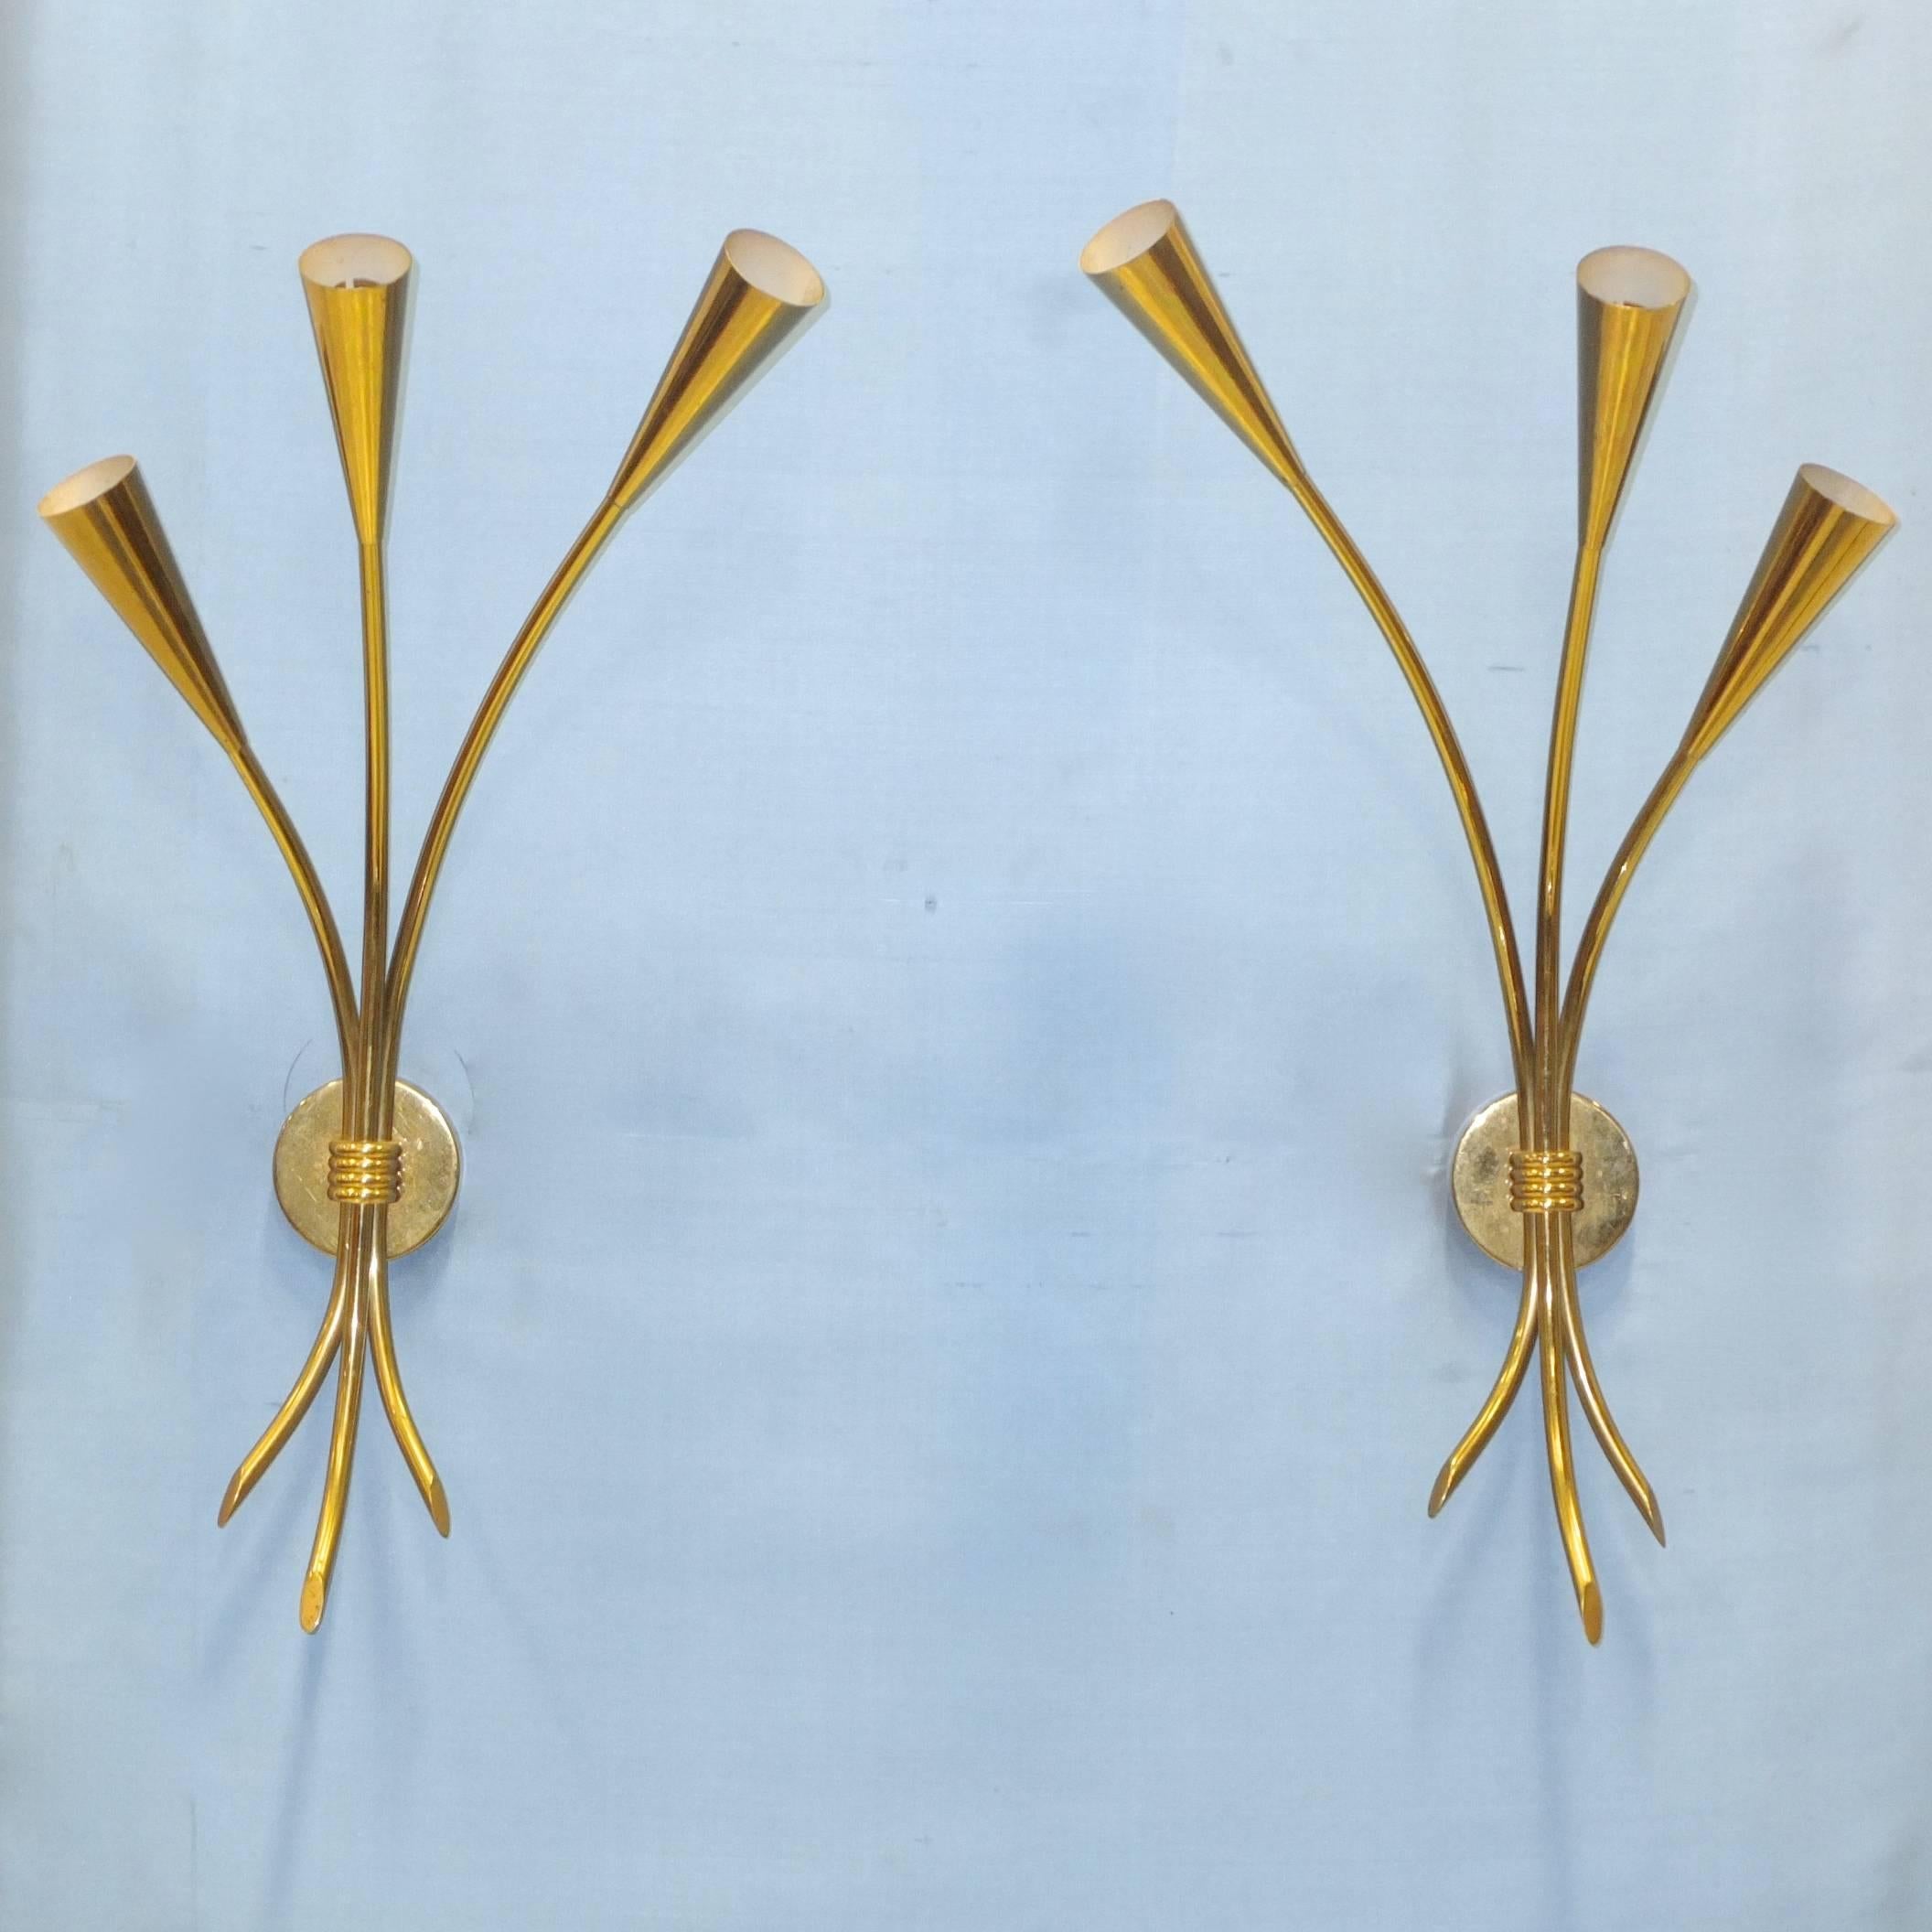 Paire d'appliques à trois bras en laiton massif des années 1950 de Lunel, modèle 701/3. En forme de bouquet de tulipes à trois tiges, avec des cônes en laiton massif qui se rétrécissent régulièrement jusqu'à la tige. Plaque arrière ronde en laiton